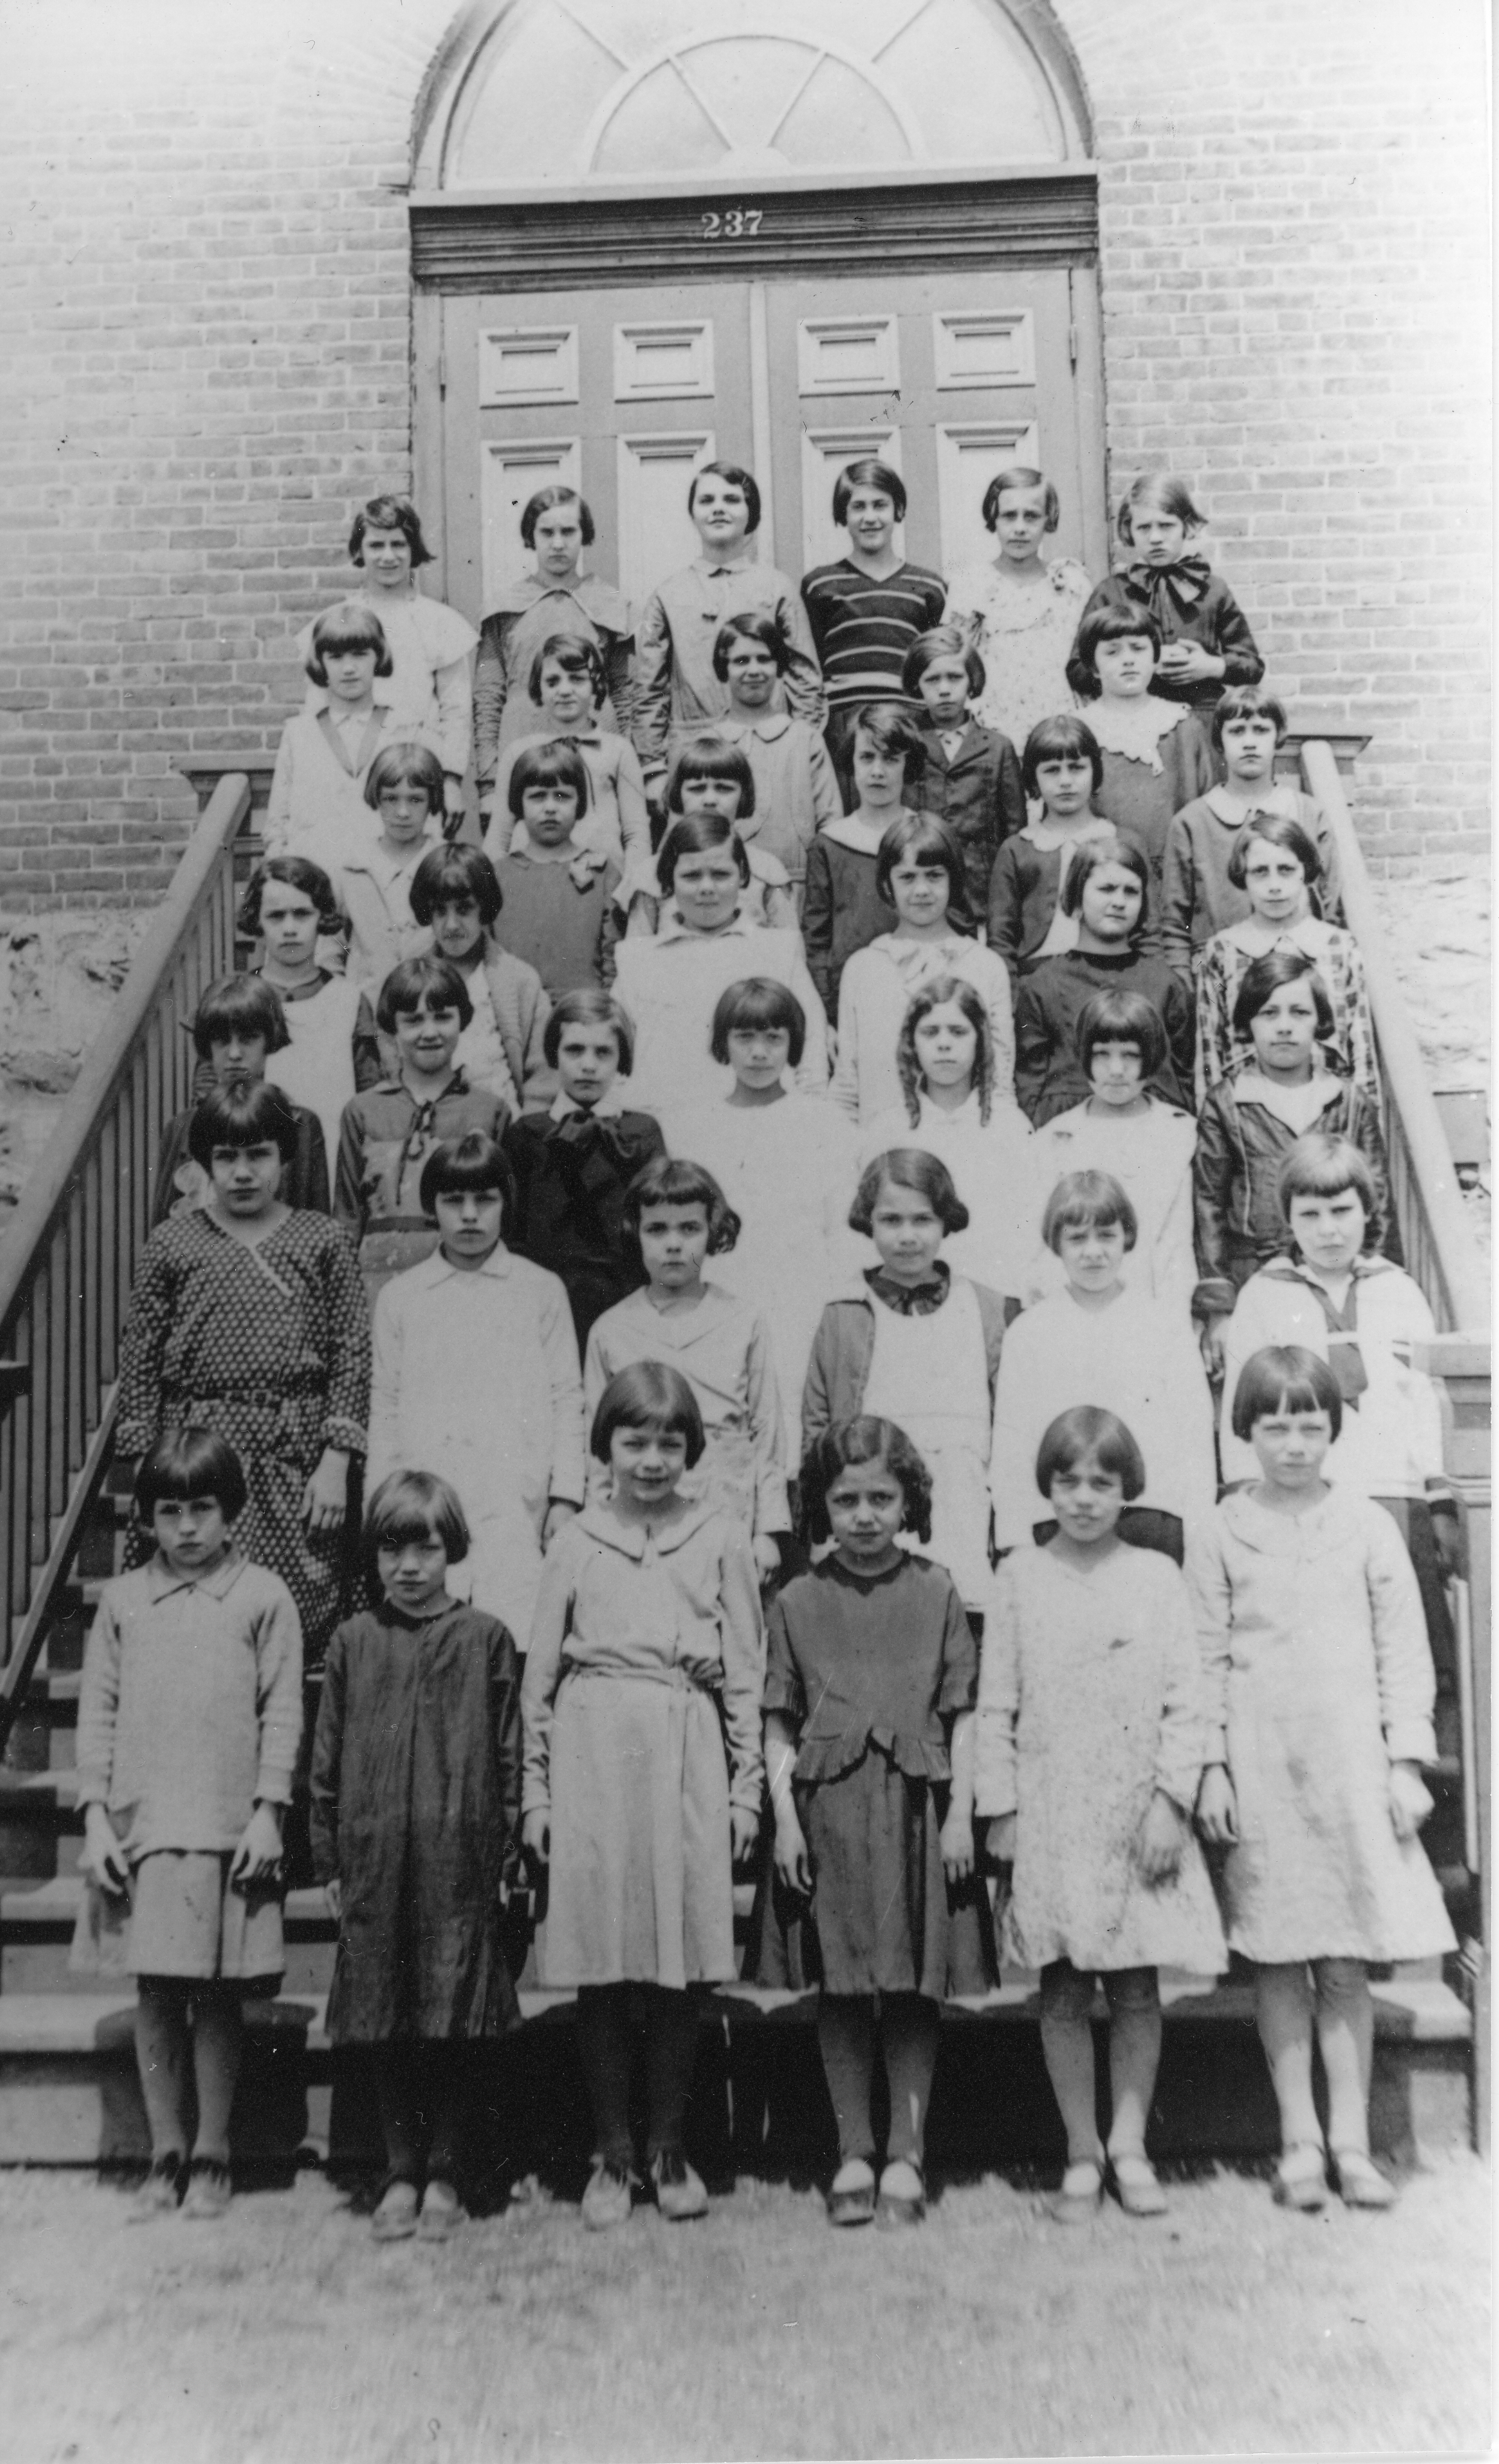 42 schoolchildren posing